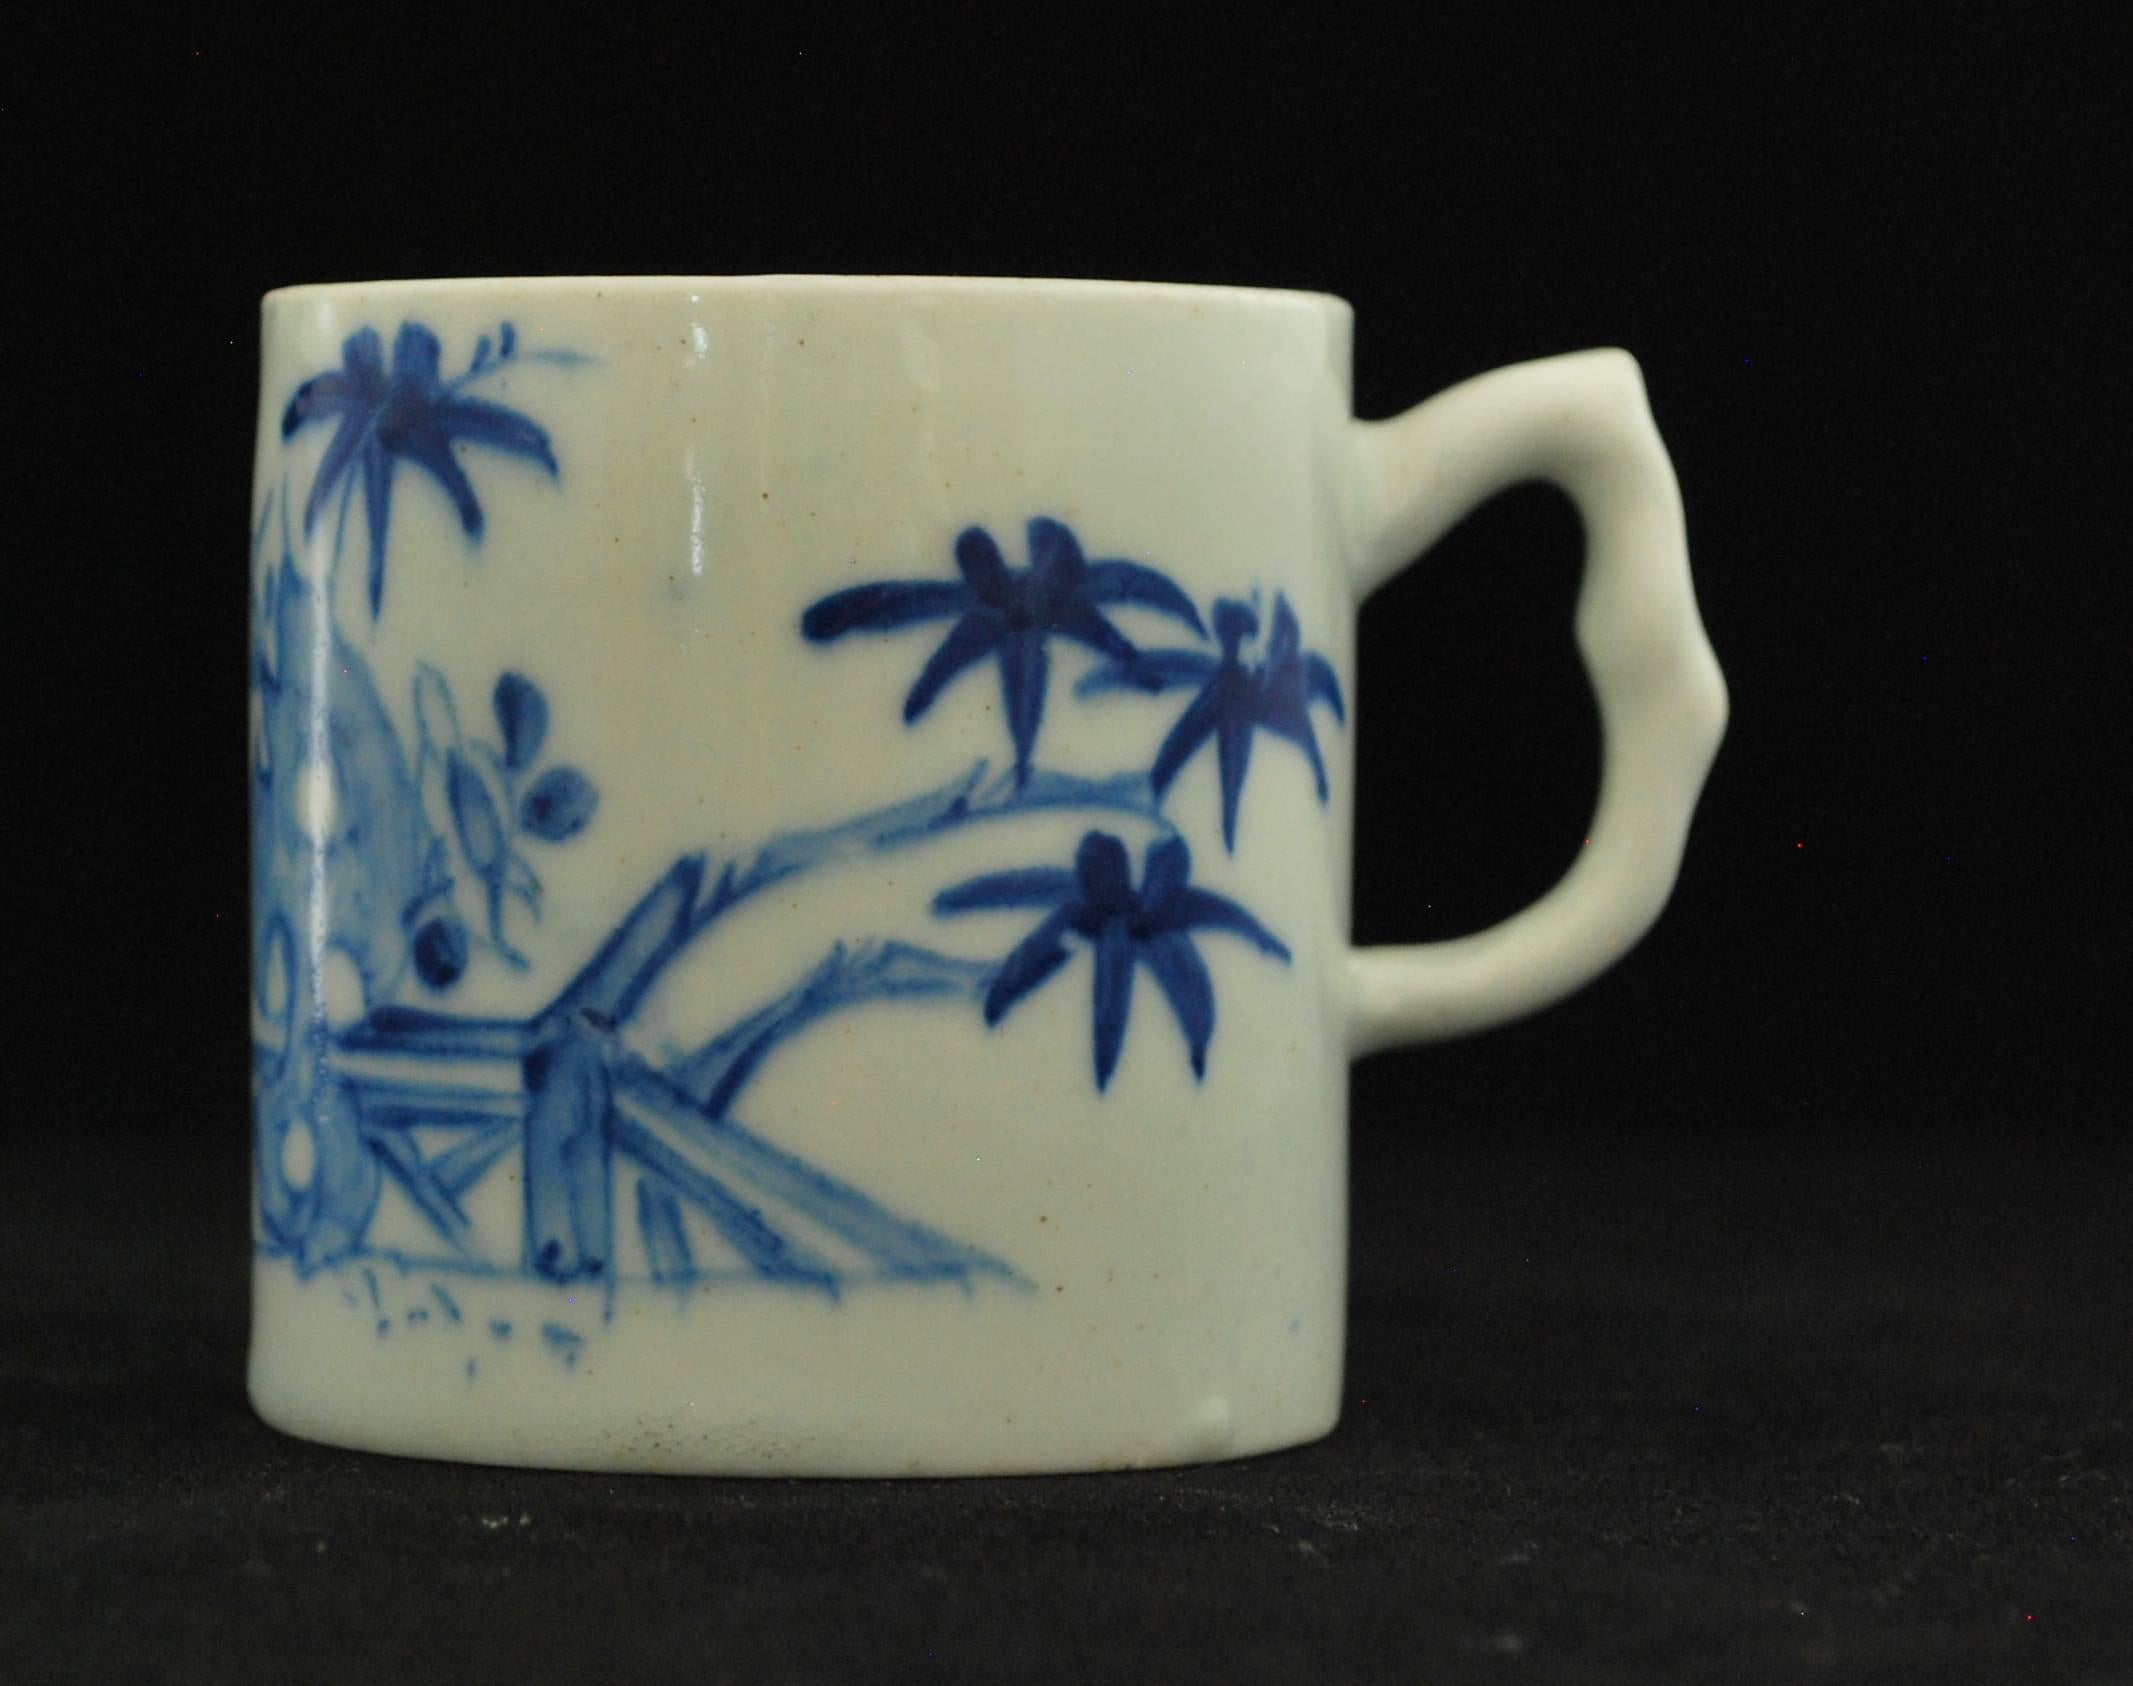 Eine frühe Kaffeedose, die unter der Glasur mit einem Gelehrtenfelsen und dazugehörigen Gegenständen bemalt ist.

Prov. Sammlung Taylor; Stockspring-Antiquitäten.

